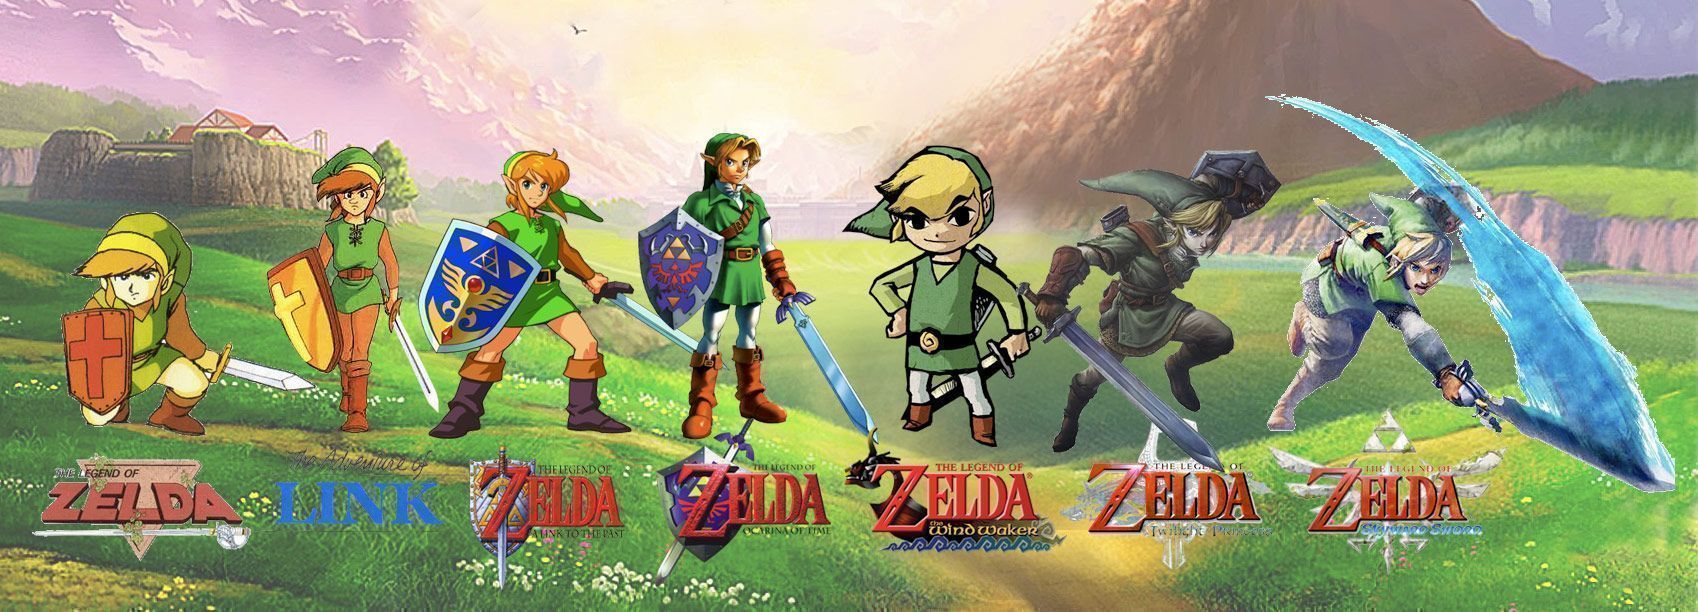 Zelda's Embrace - A New Legend (Zelda Hack)